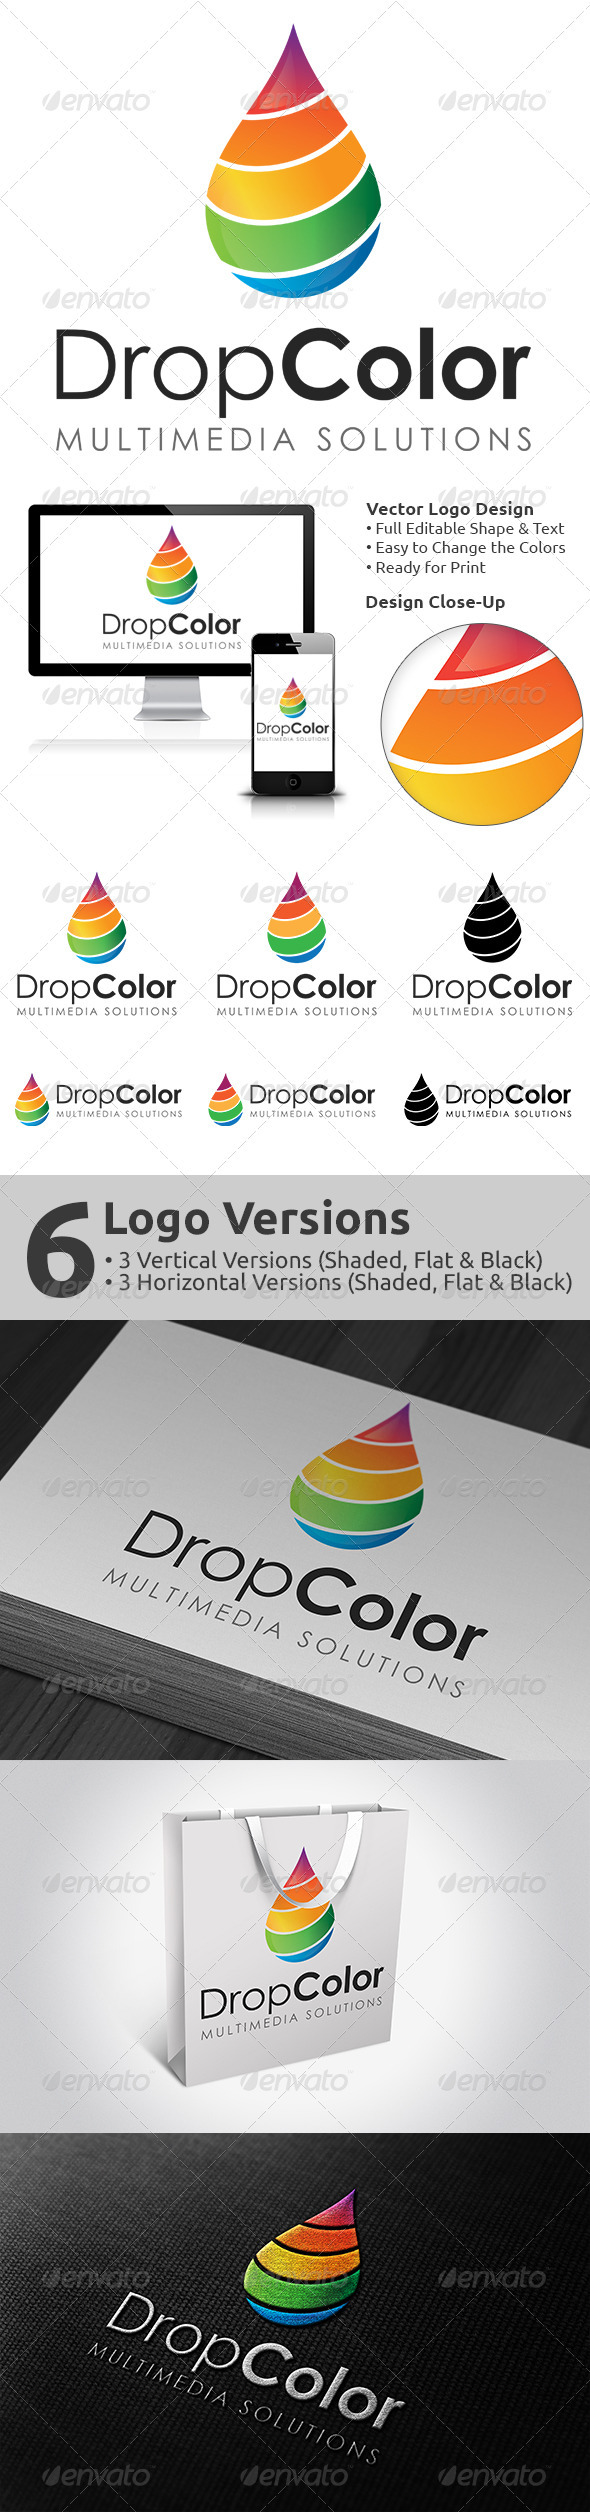 DropColor Logo Design